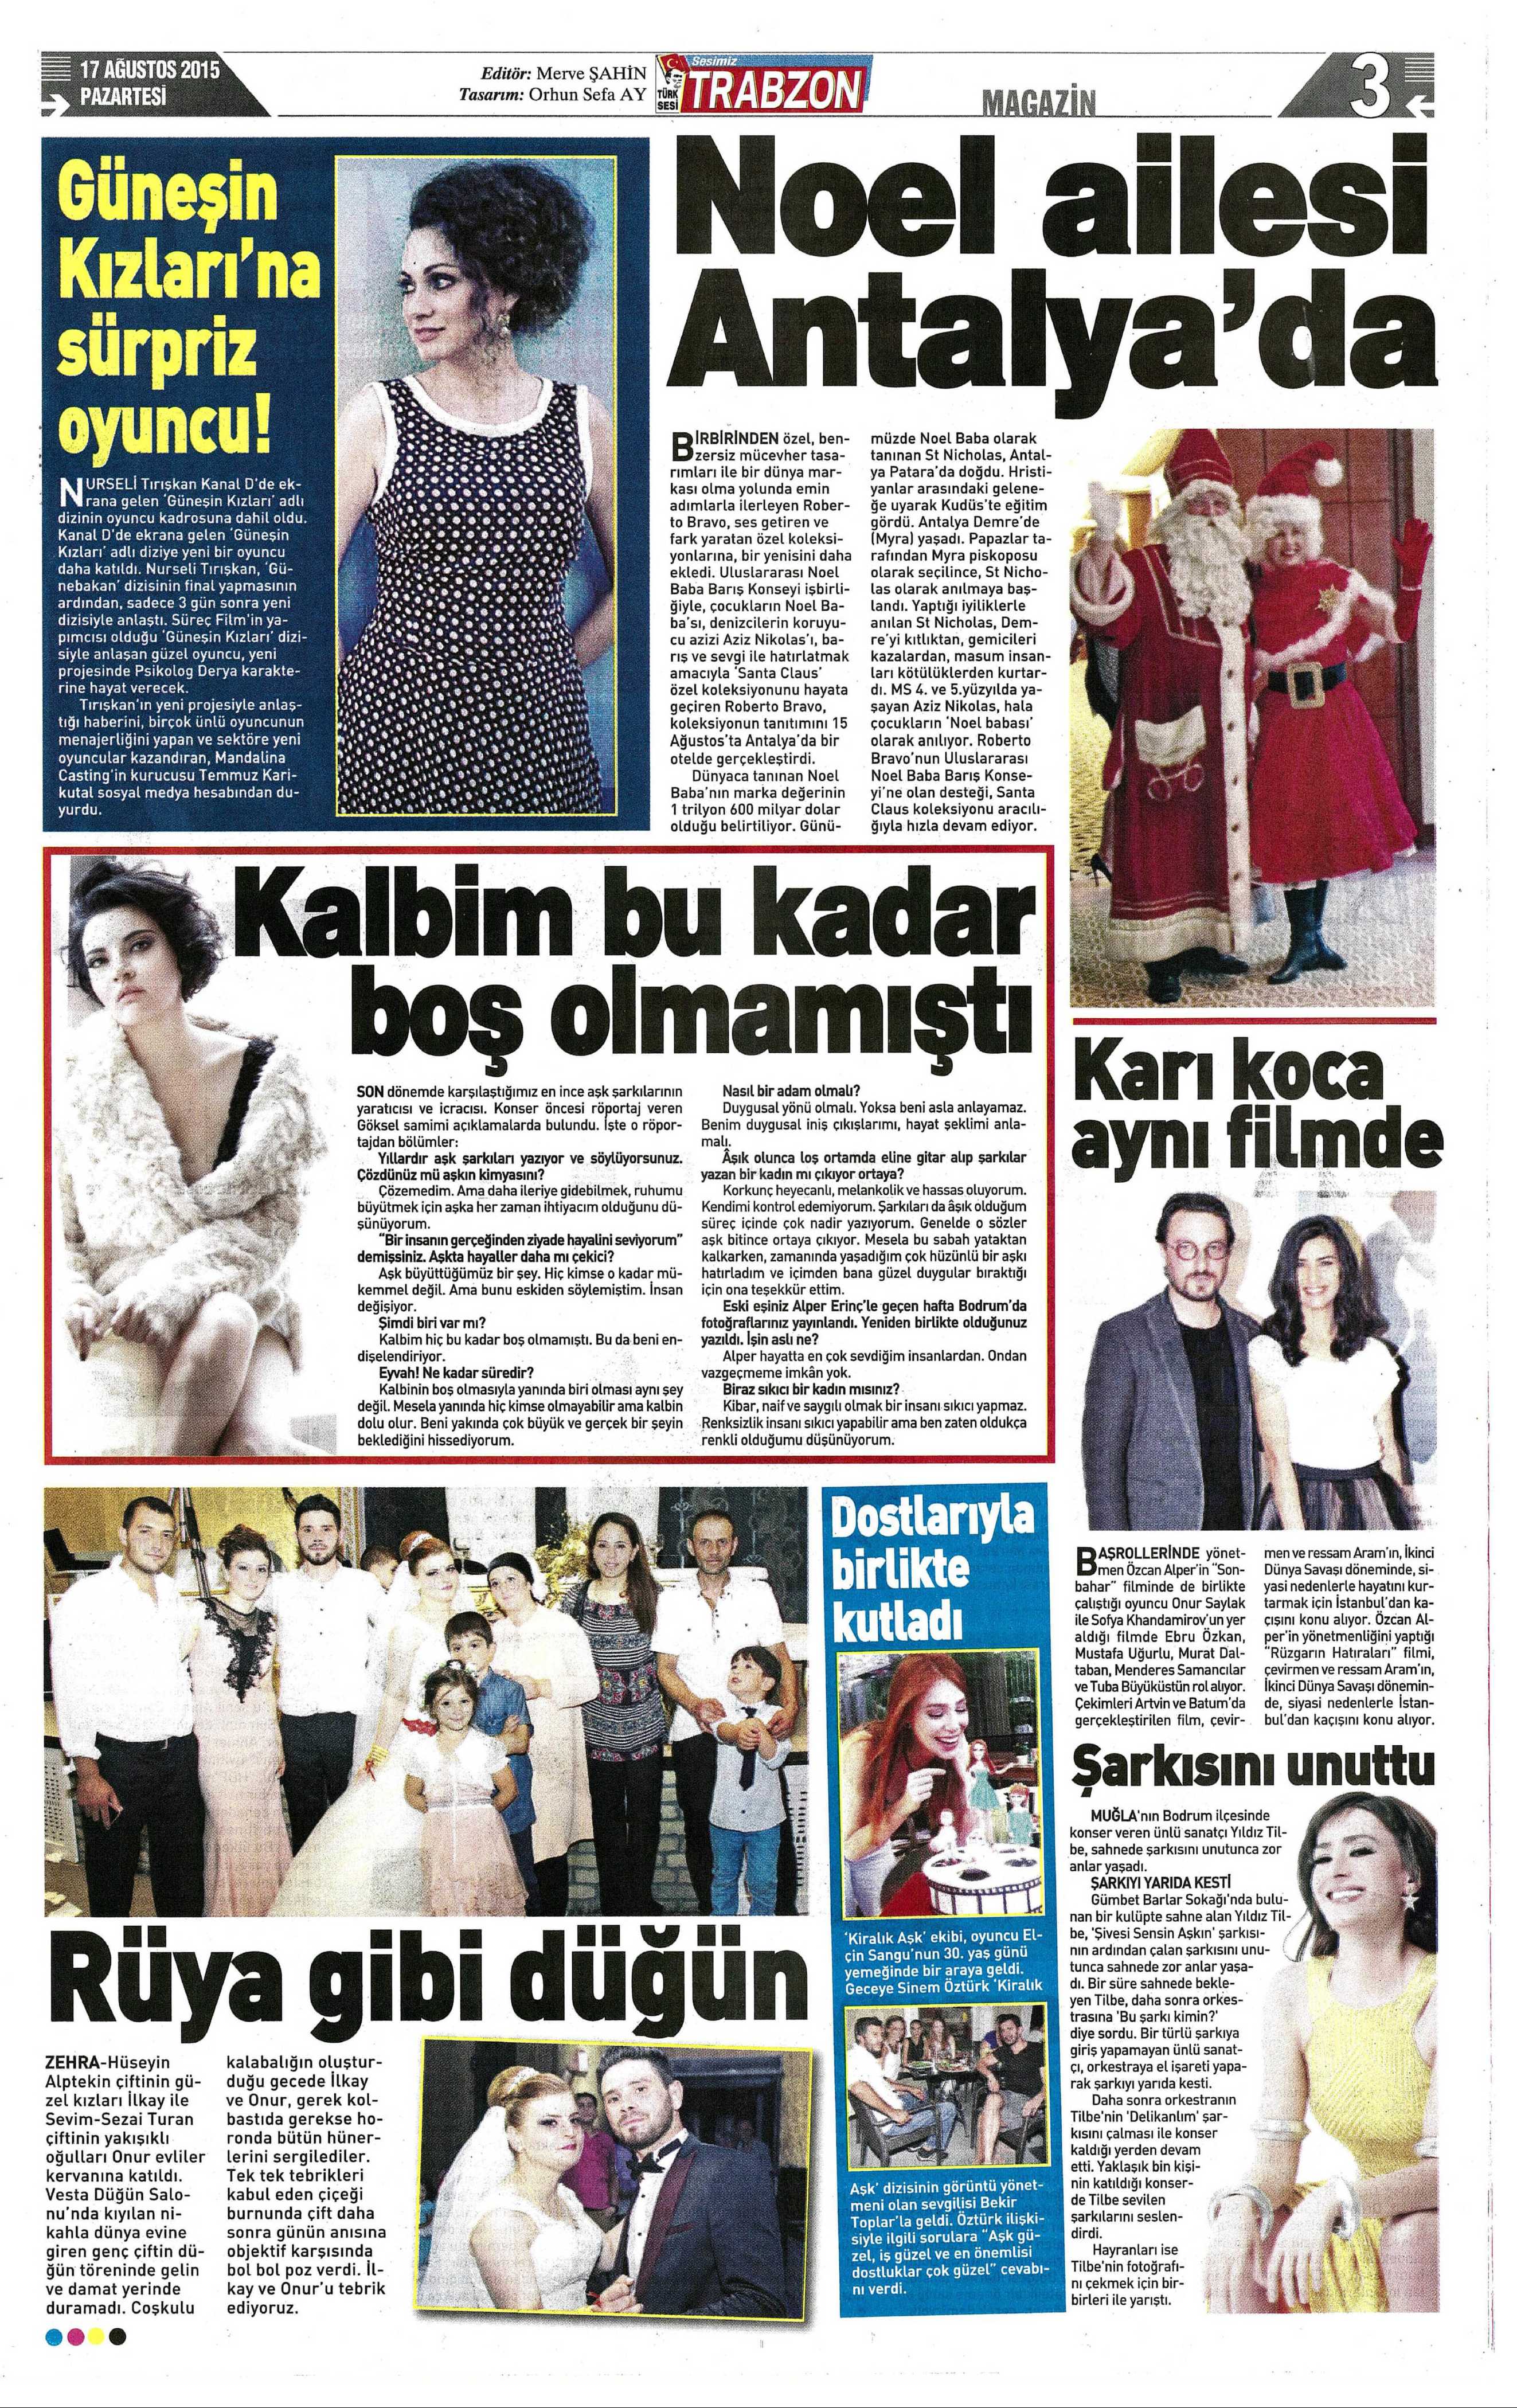 Nurseli Tırışkan - Trabzon Türk Sesi Gazetesi Haberi 2